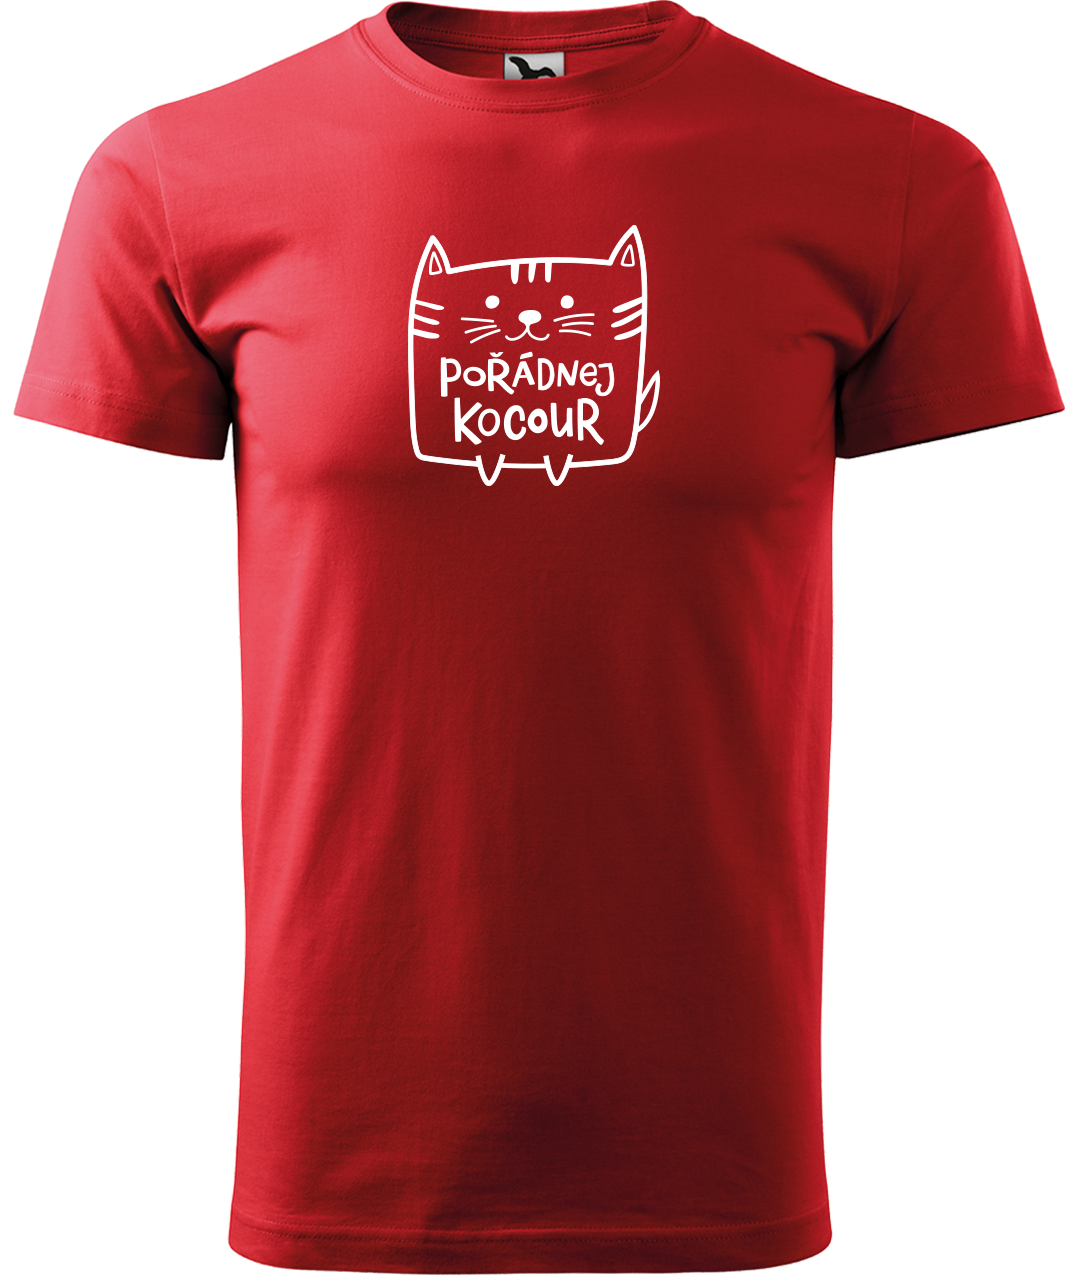 Pánské tričko s kočkou - Pořádnej kocour Velikost: M, Barva: Červená (07)